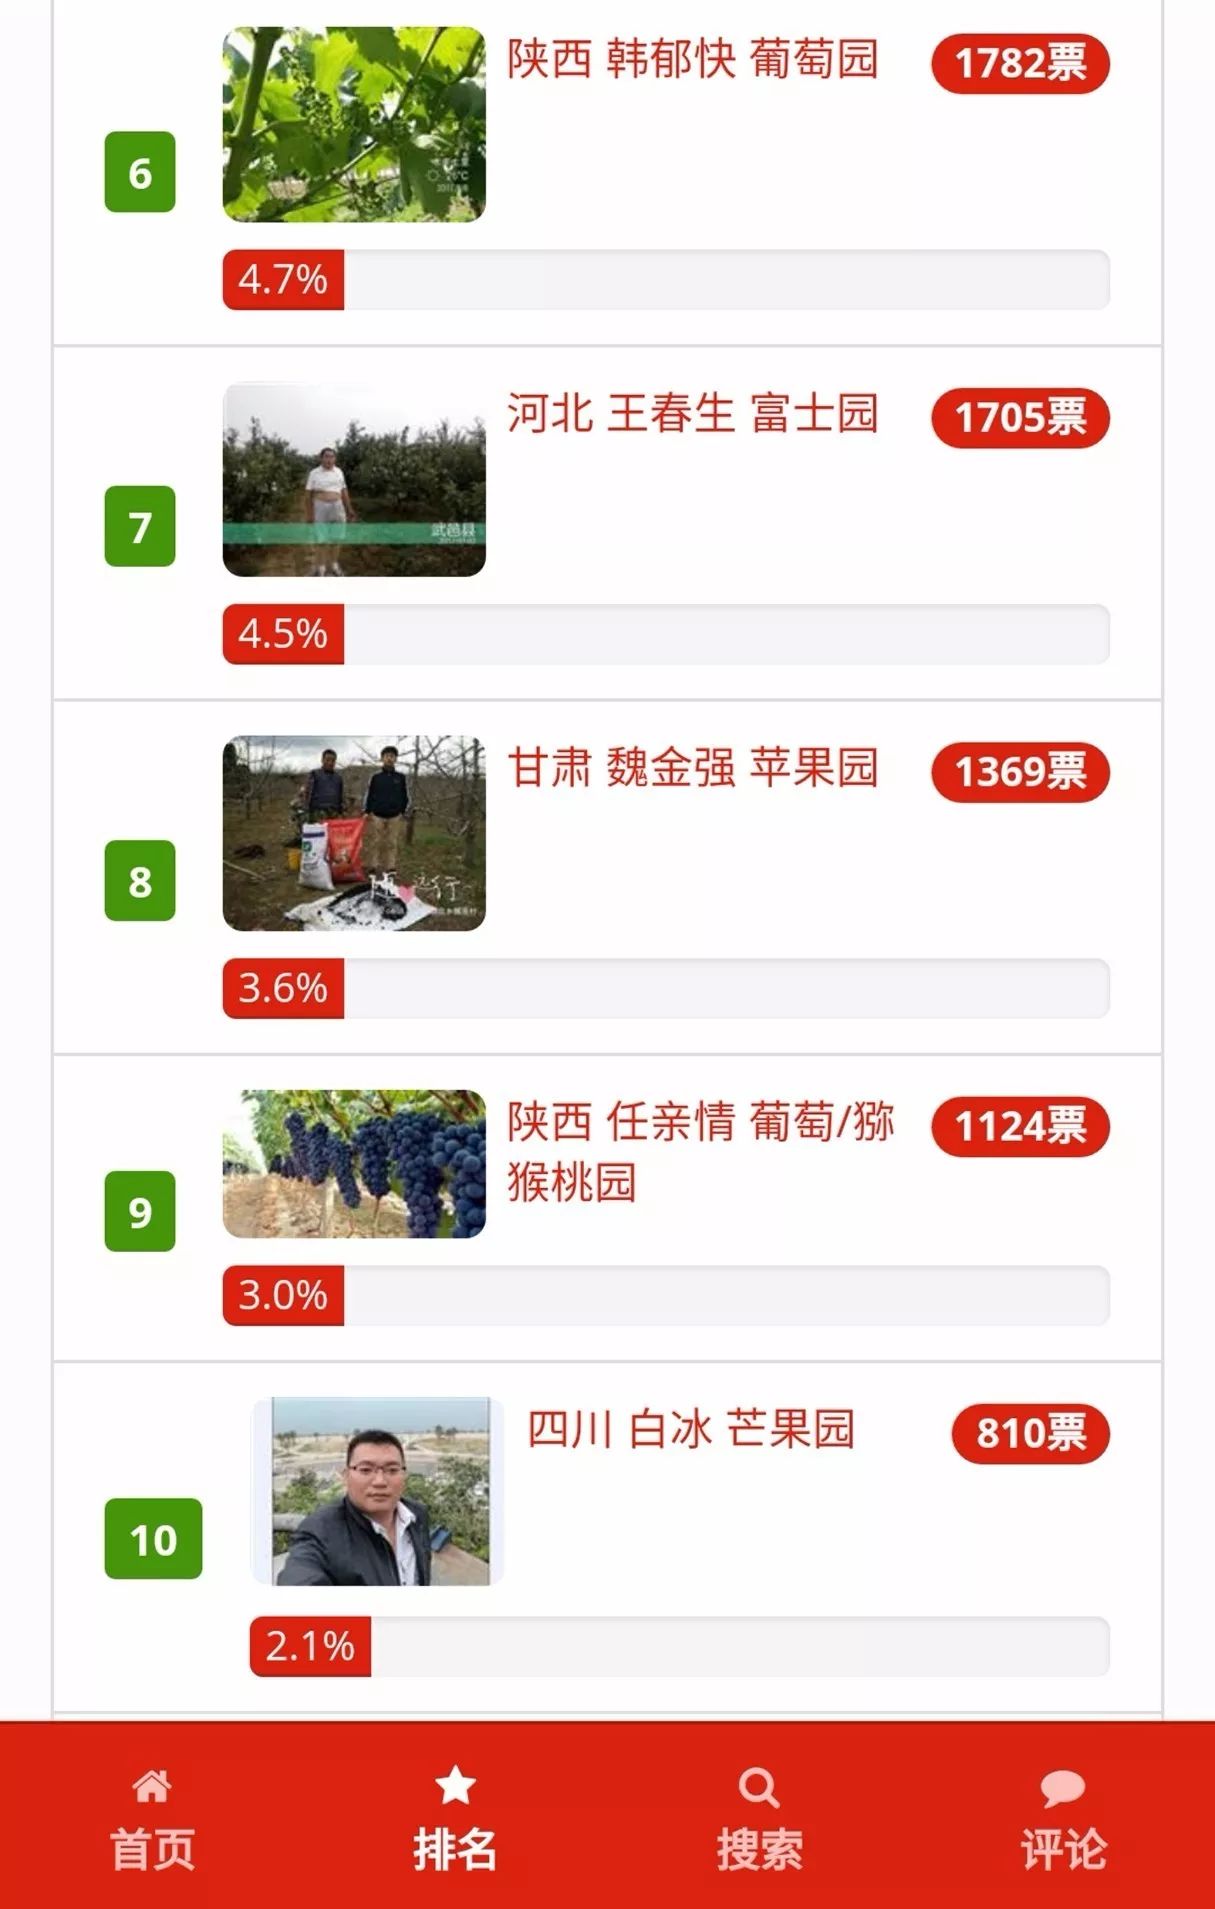 2017中国最美果园网络投票仅剩24小时!谁是第一名?